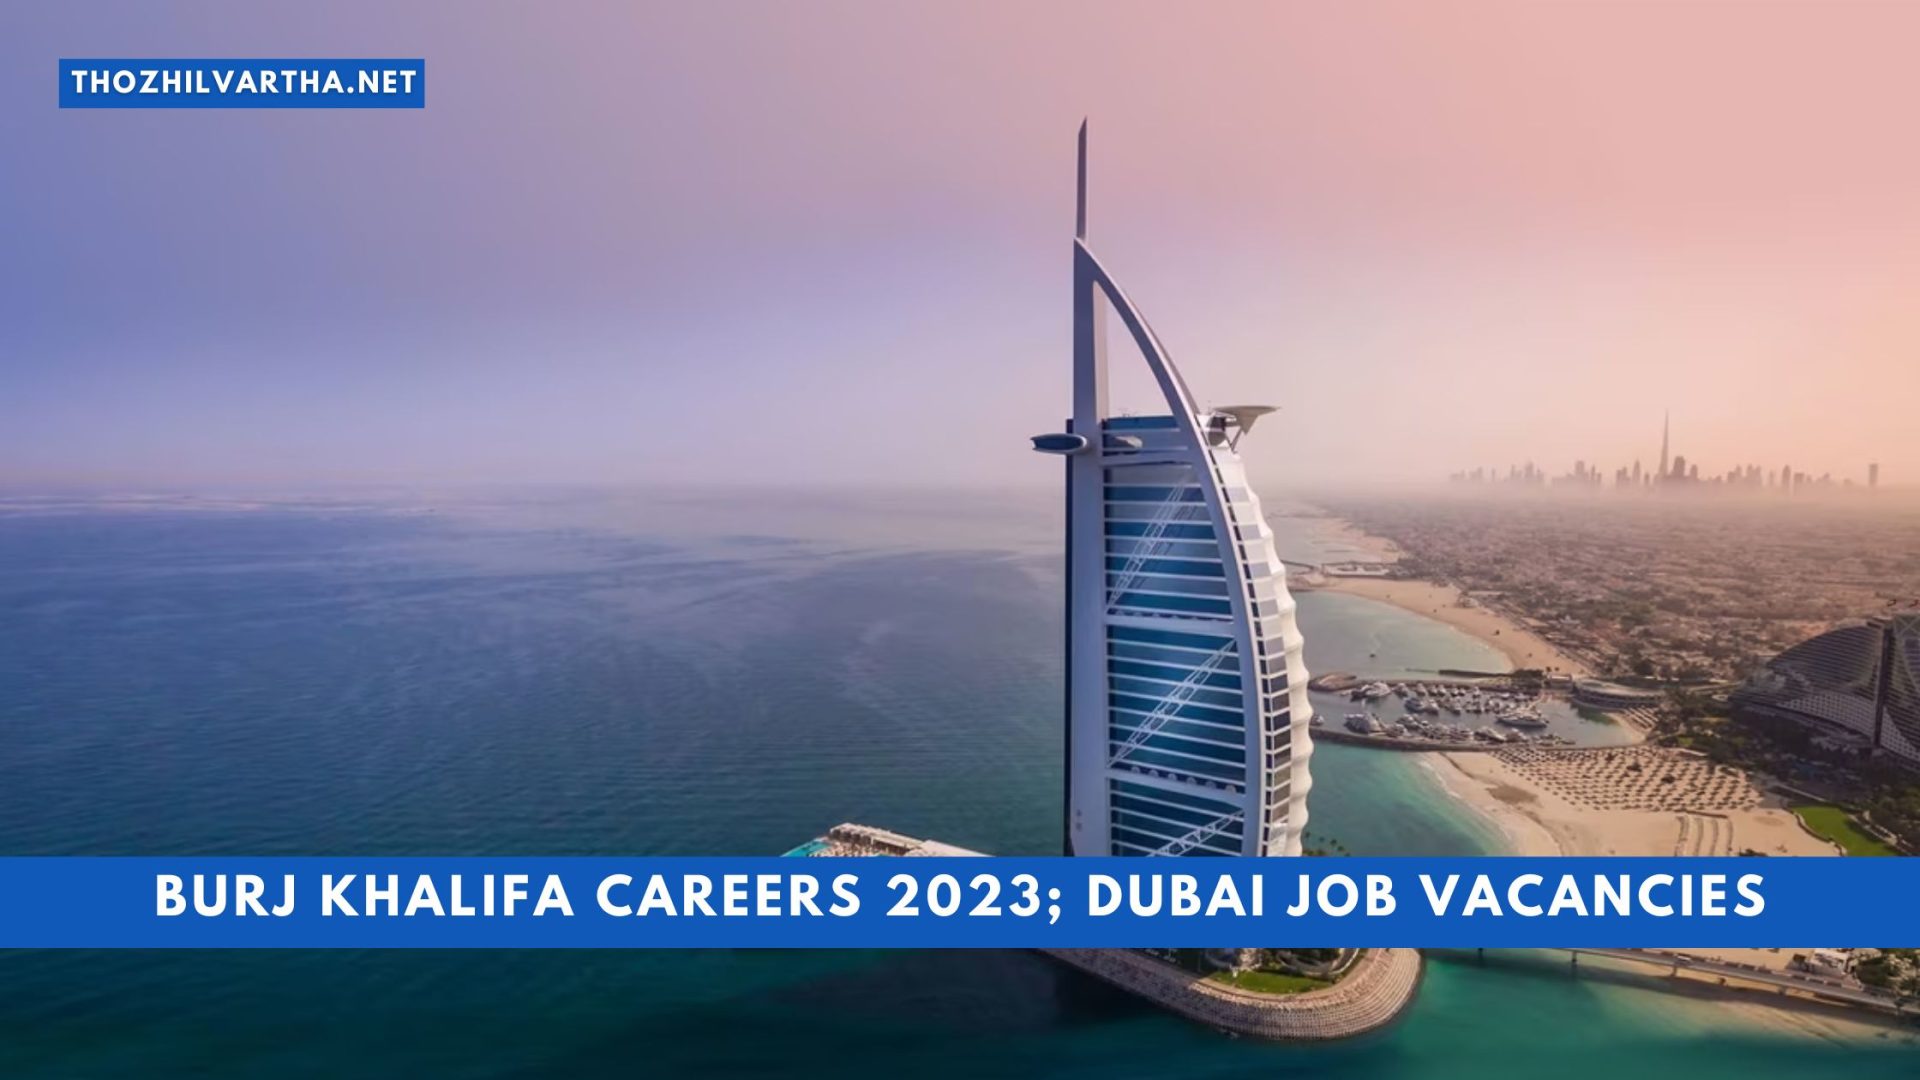 Burj Khalifa Careers 2023; Dubai Job Vacancies